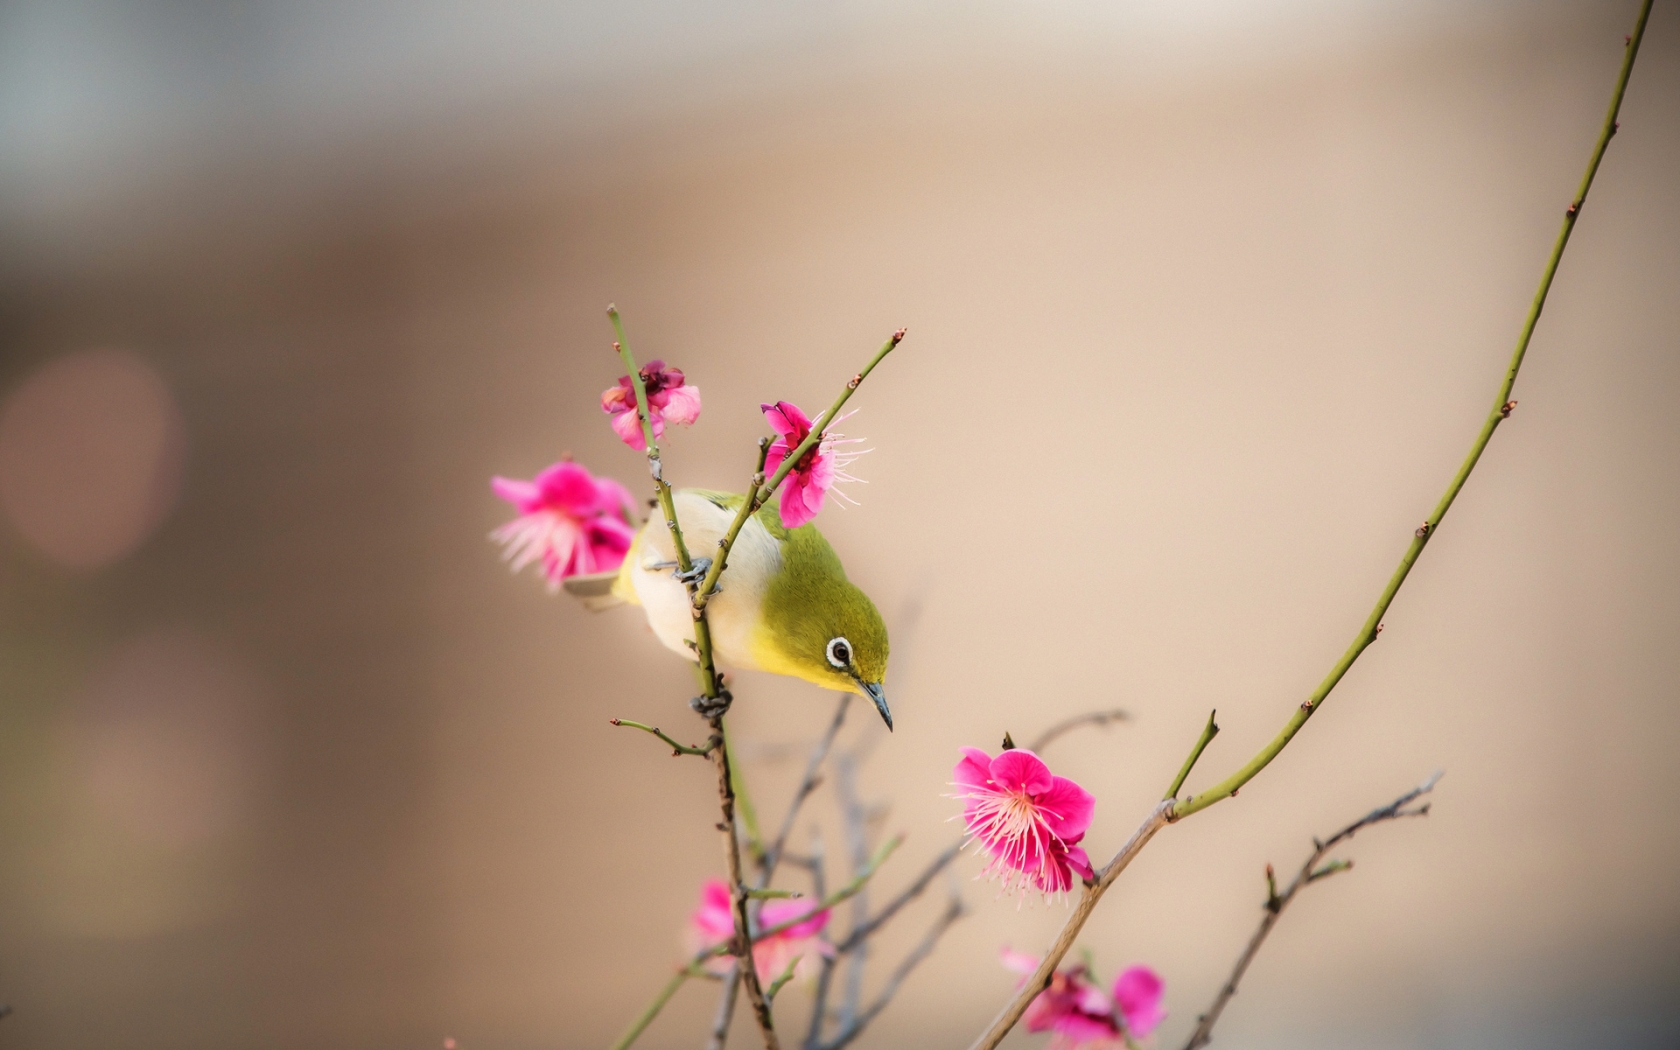 Little Bird on a Branch for 1680 x 1050 widescreen resolution